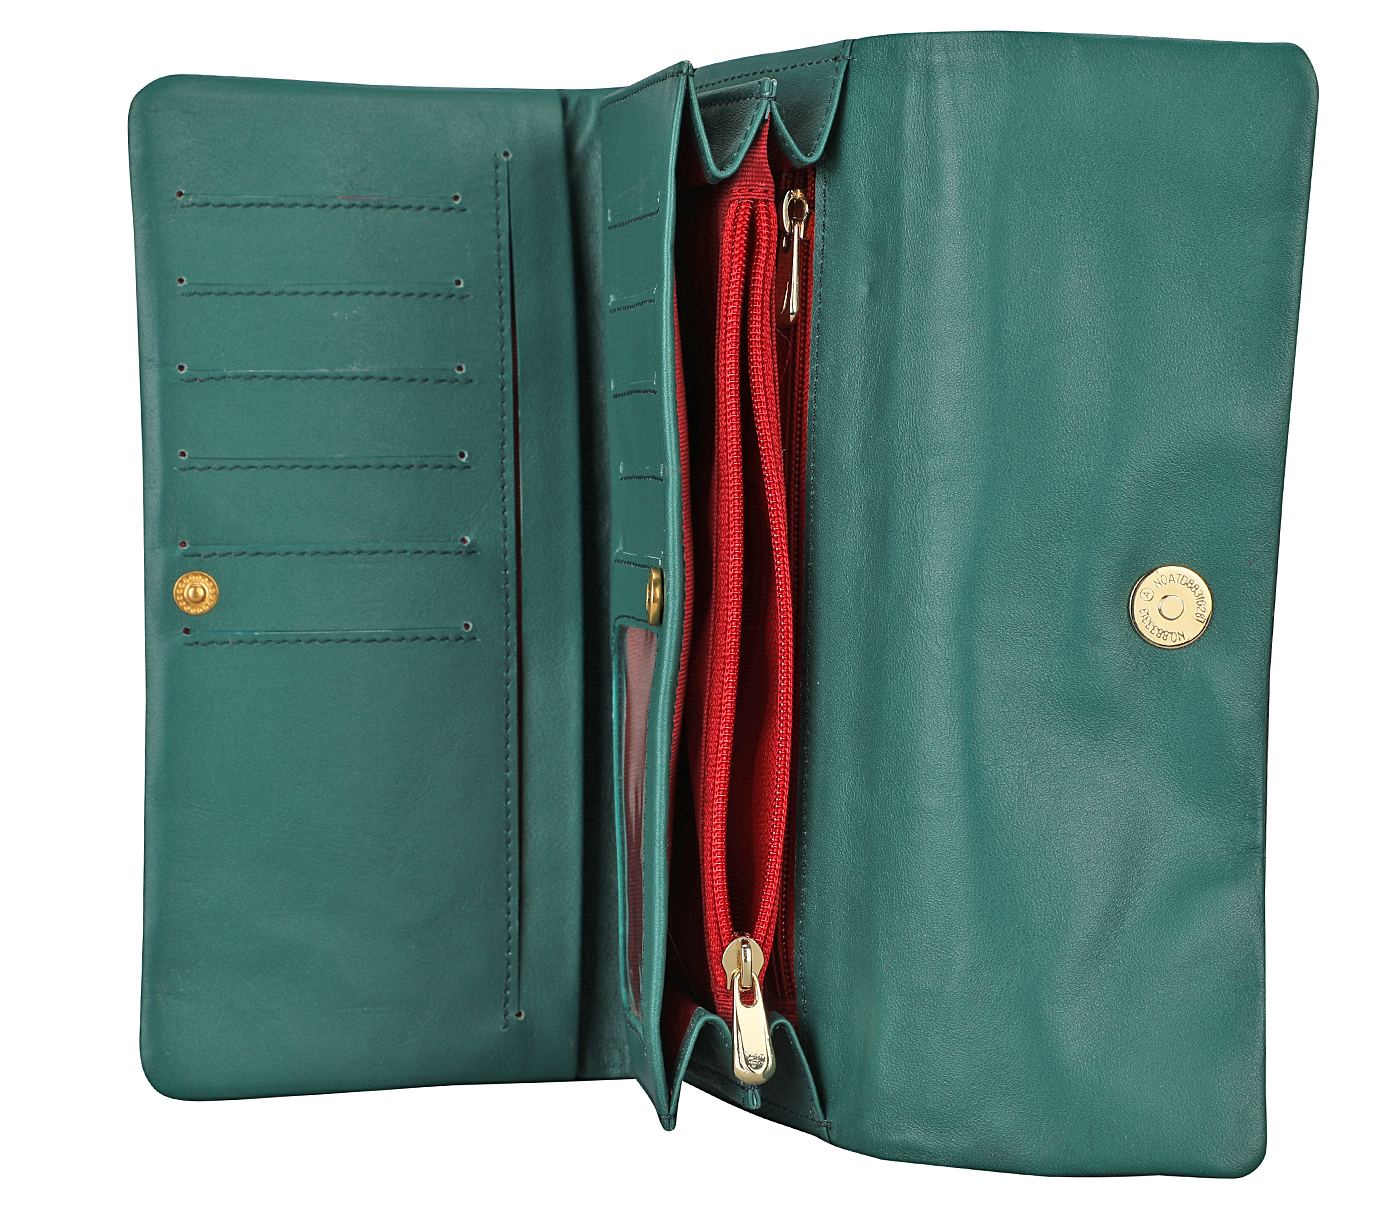 W342-Marcia-Women's wallet in Genuine Leather - Green